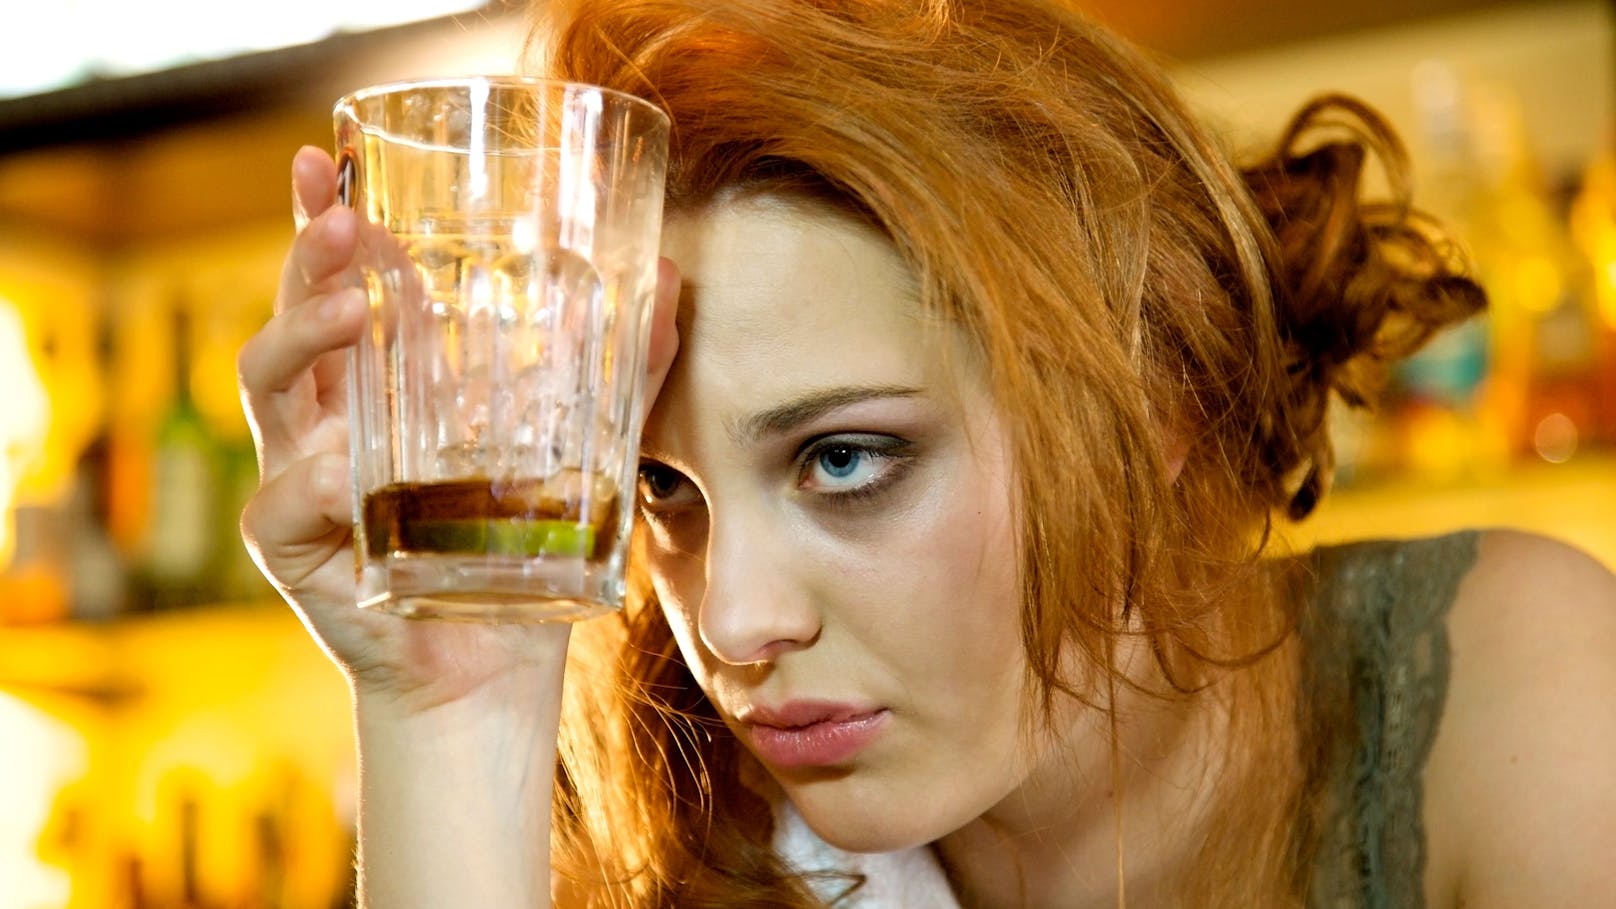 "Nüchterne Hedonisten" für Trinken ganz ohne Rausch